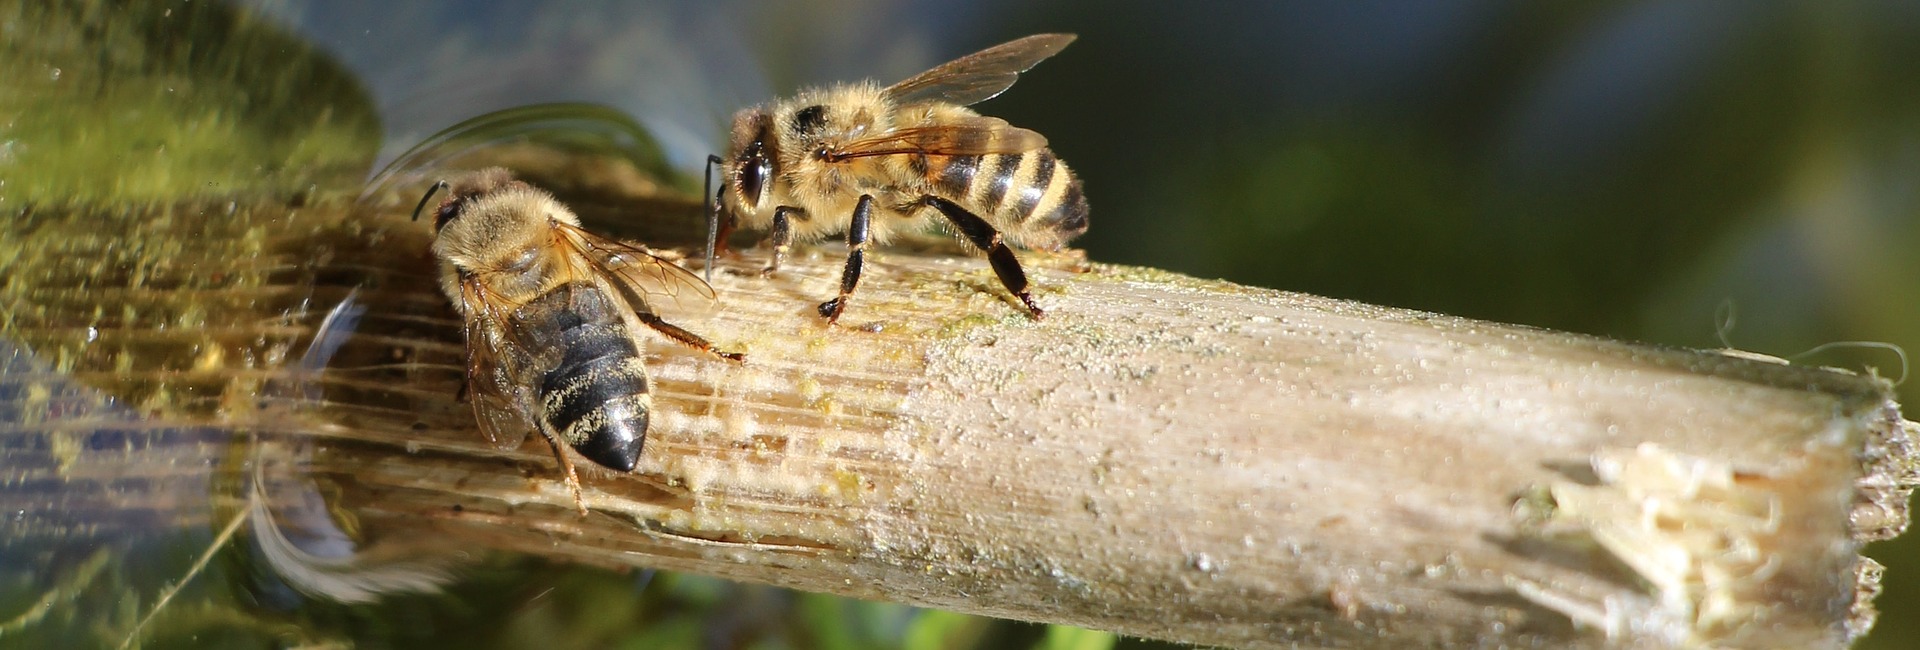 Bienen an einer Wasserquelle